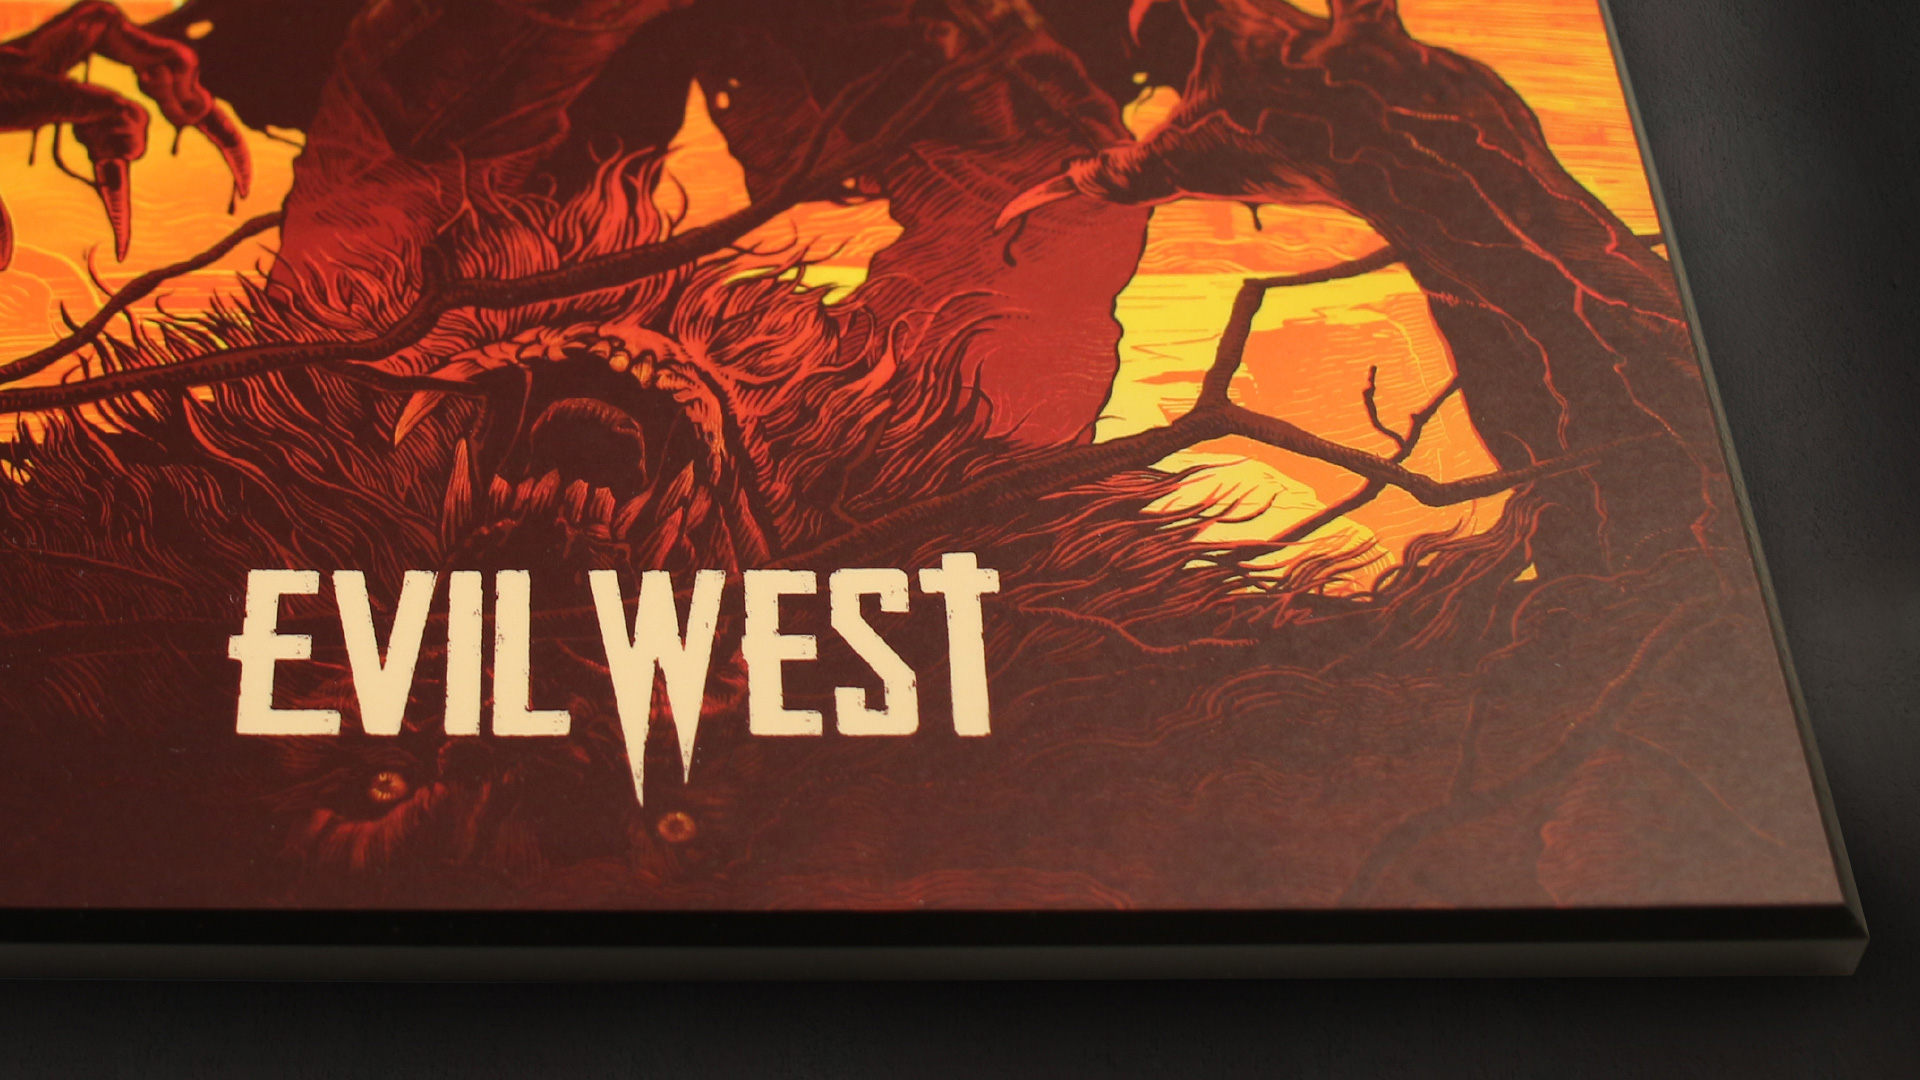 Evil West, Focus Entertainment, Playstation 4 